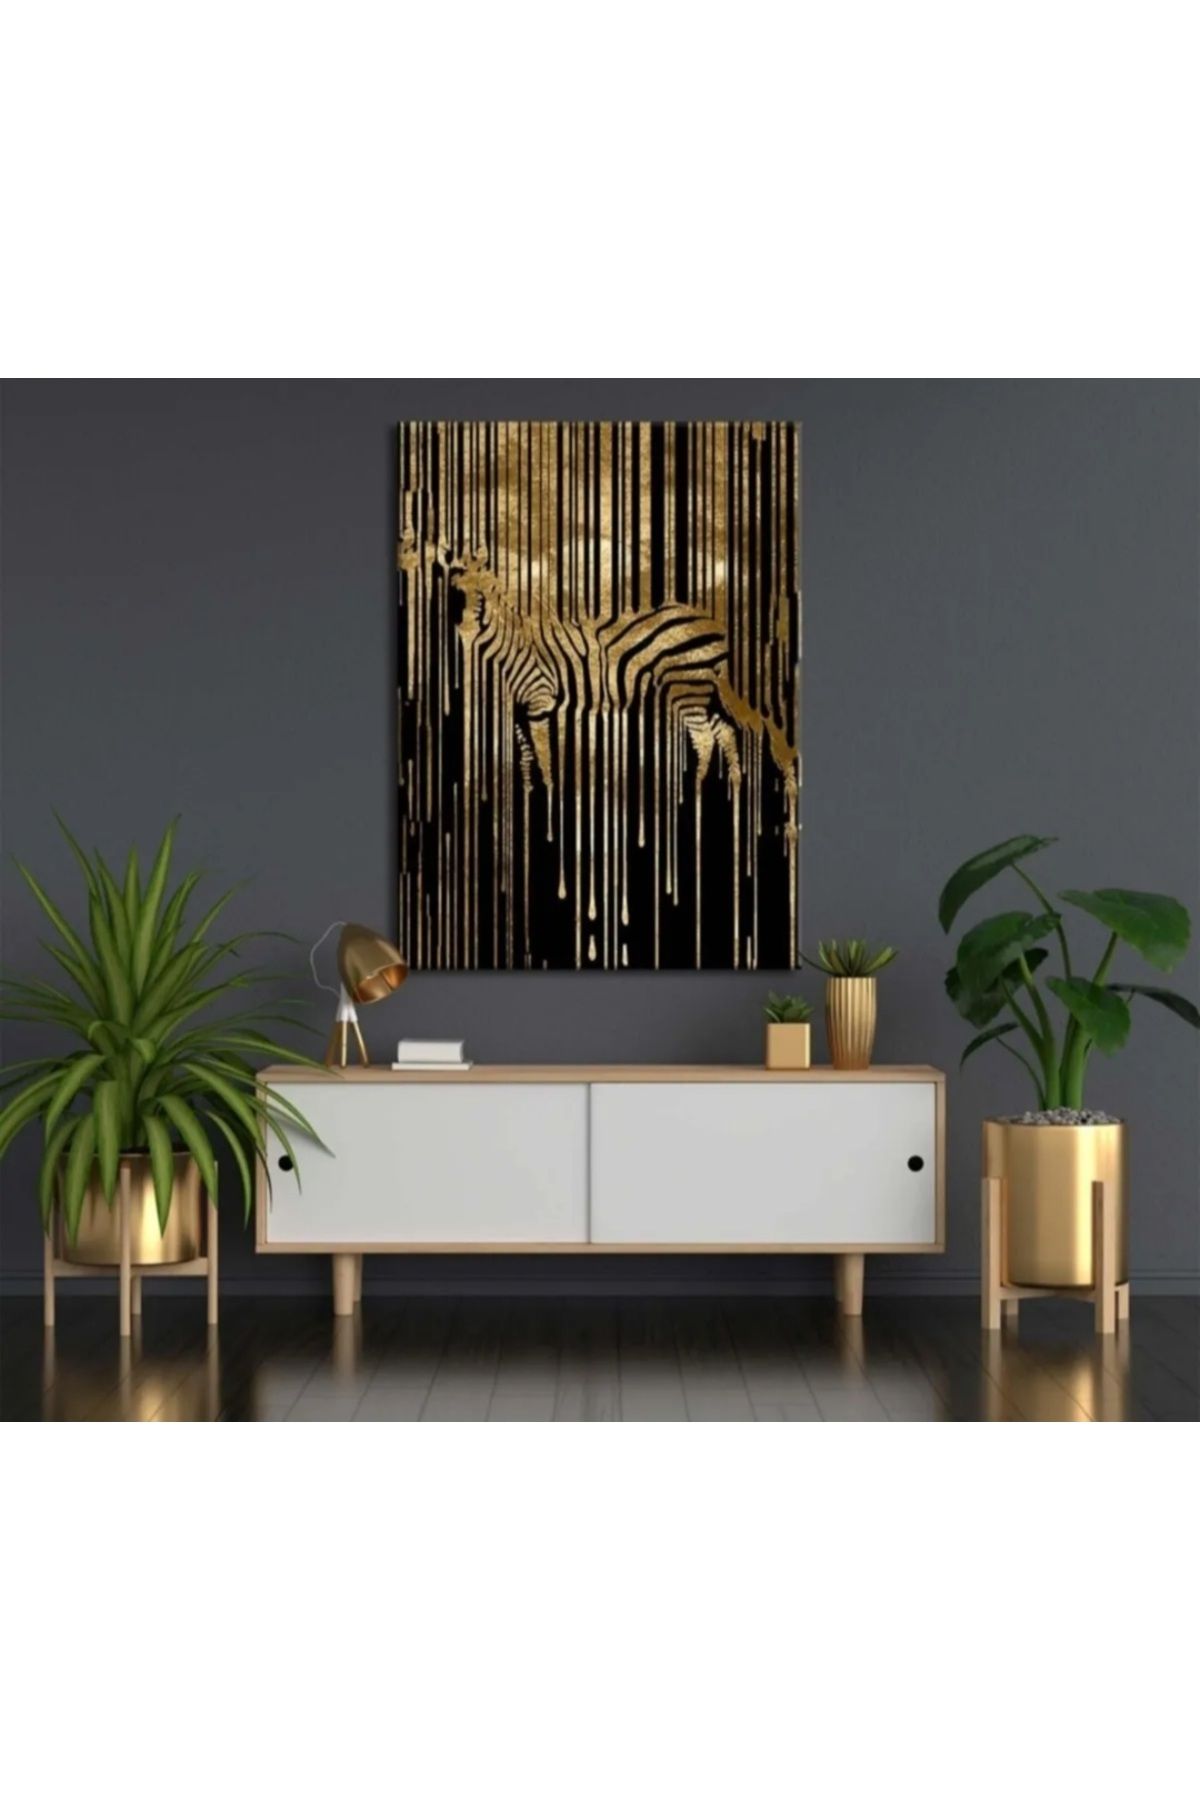 Shop365 Altın Zebra Dekoratif Duvar Kanvas Tablo